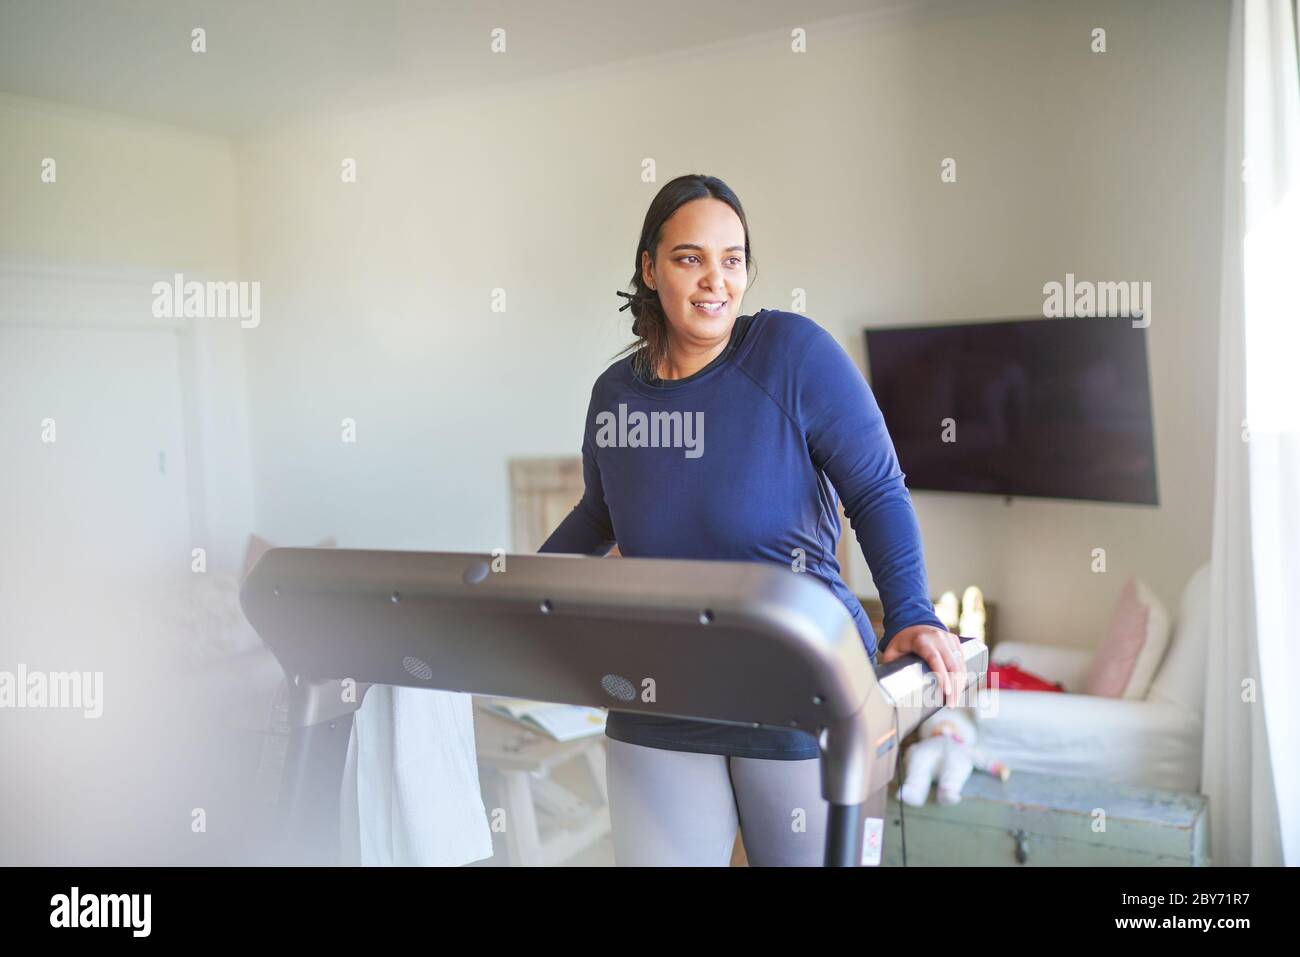 Smiling woman sur tapis roulant Banque D'Images